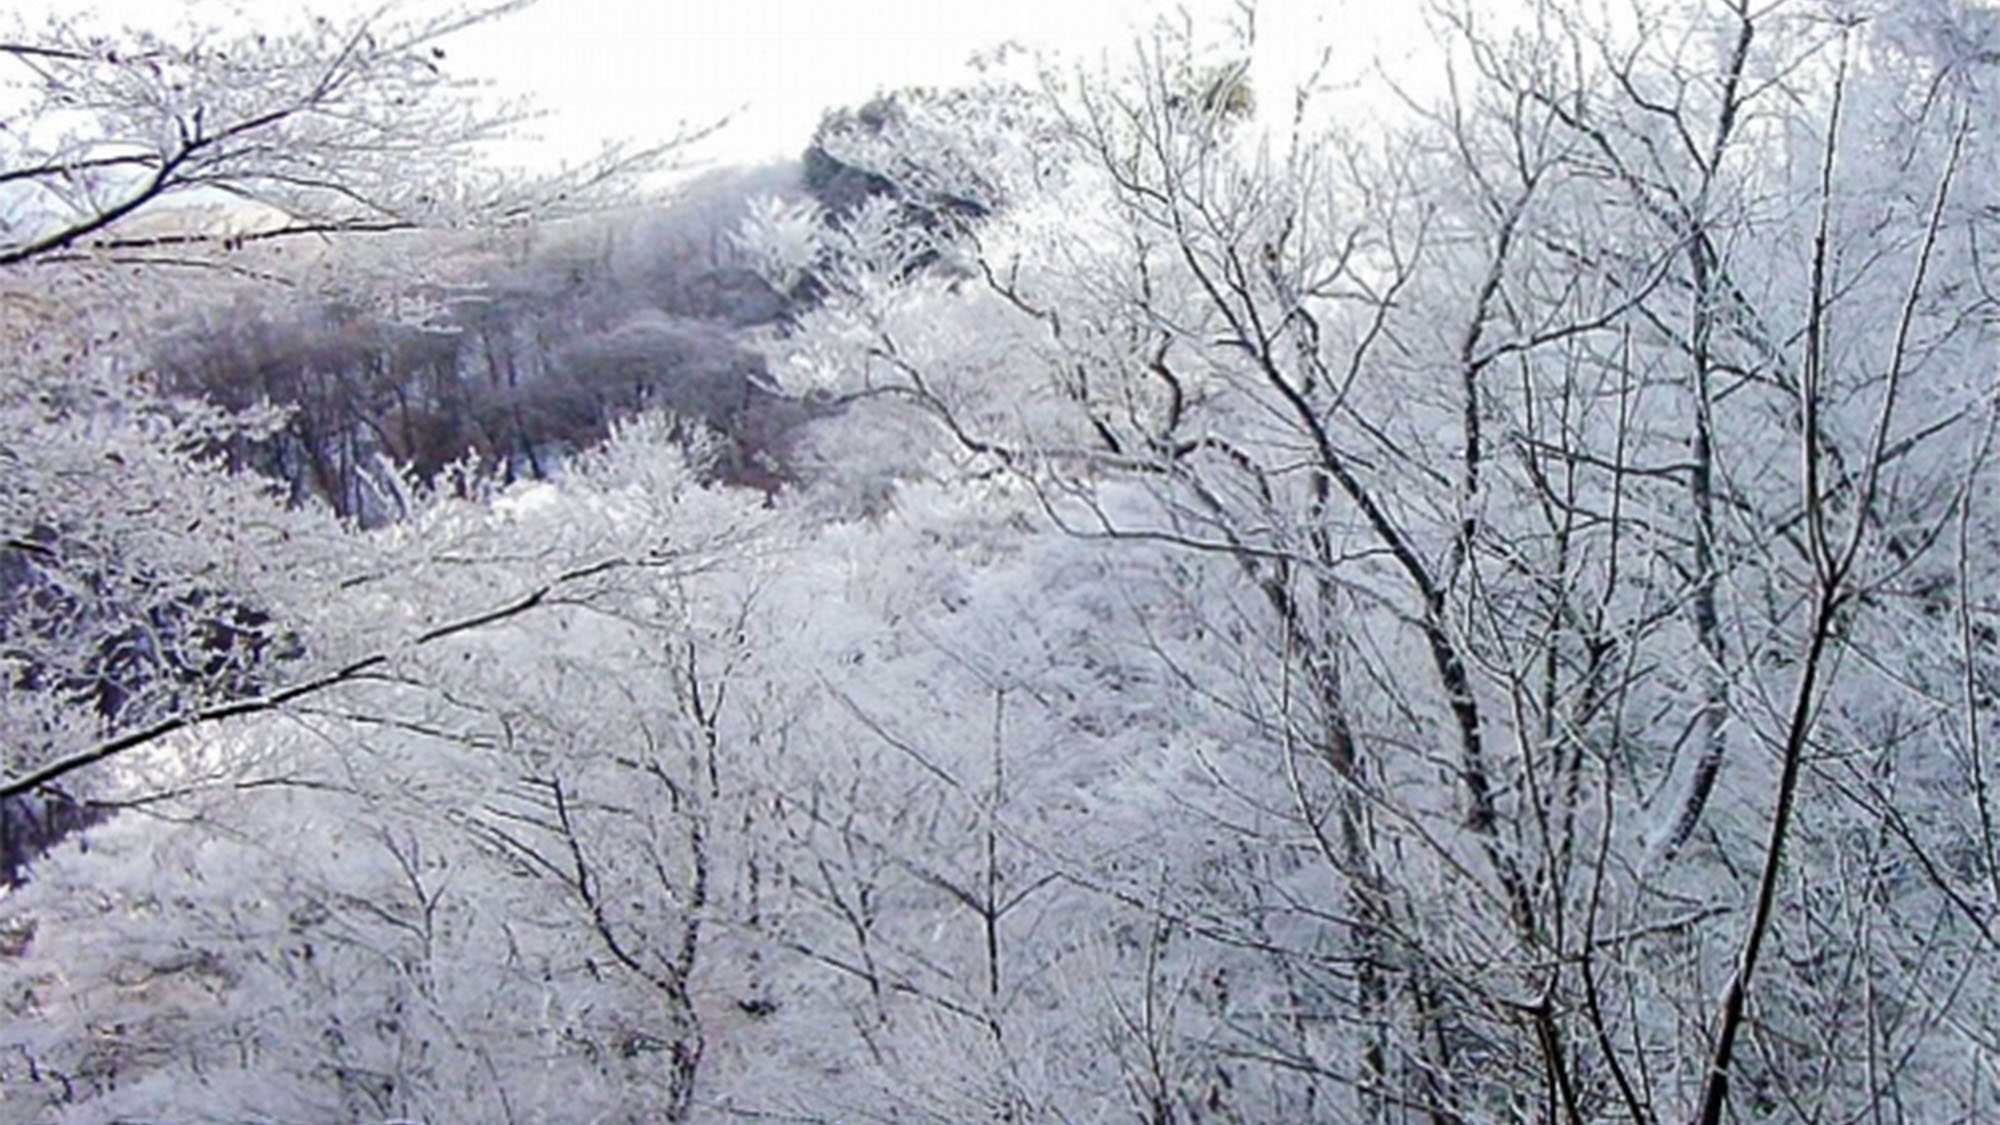 ・【風景】凛とした空気の中、連なる樹氷が綺麗♪